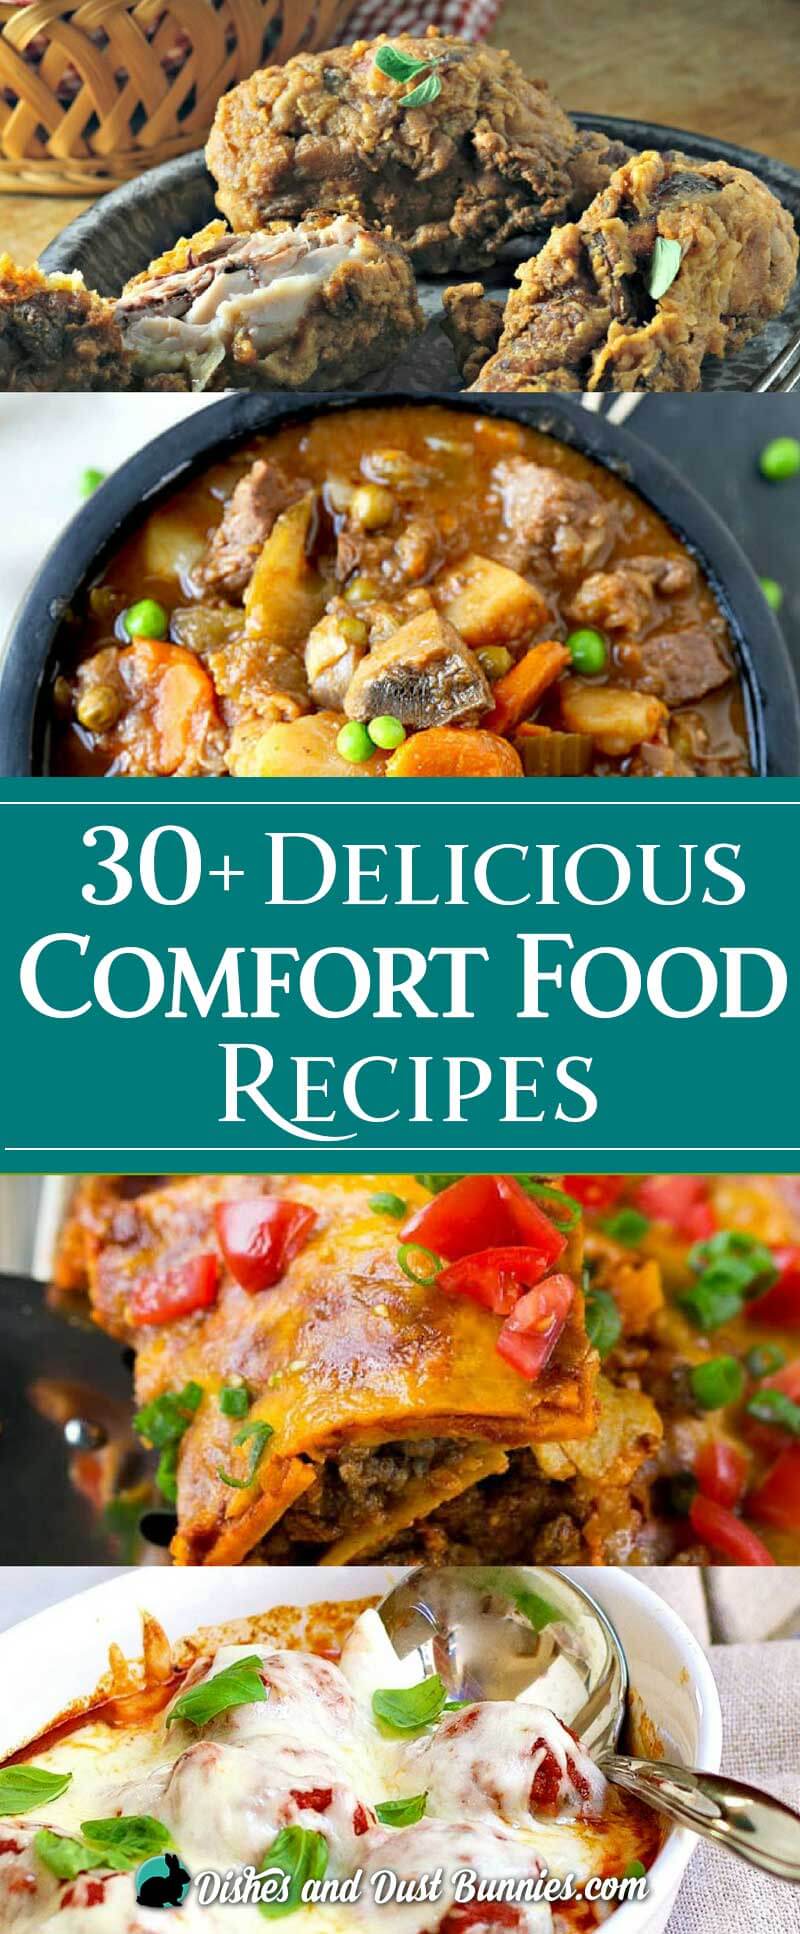 30+ Delicious Comfort Food Recipes - dishesanddustbunnies.com